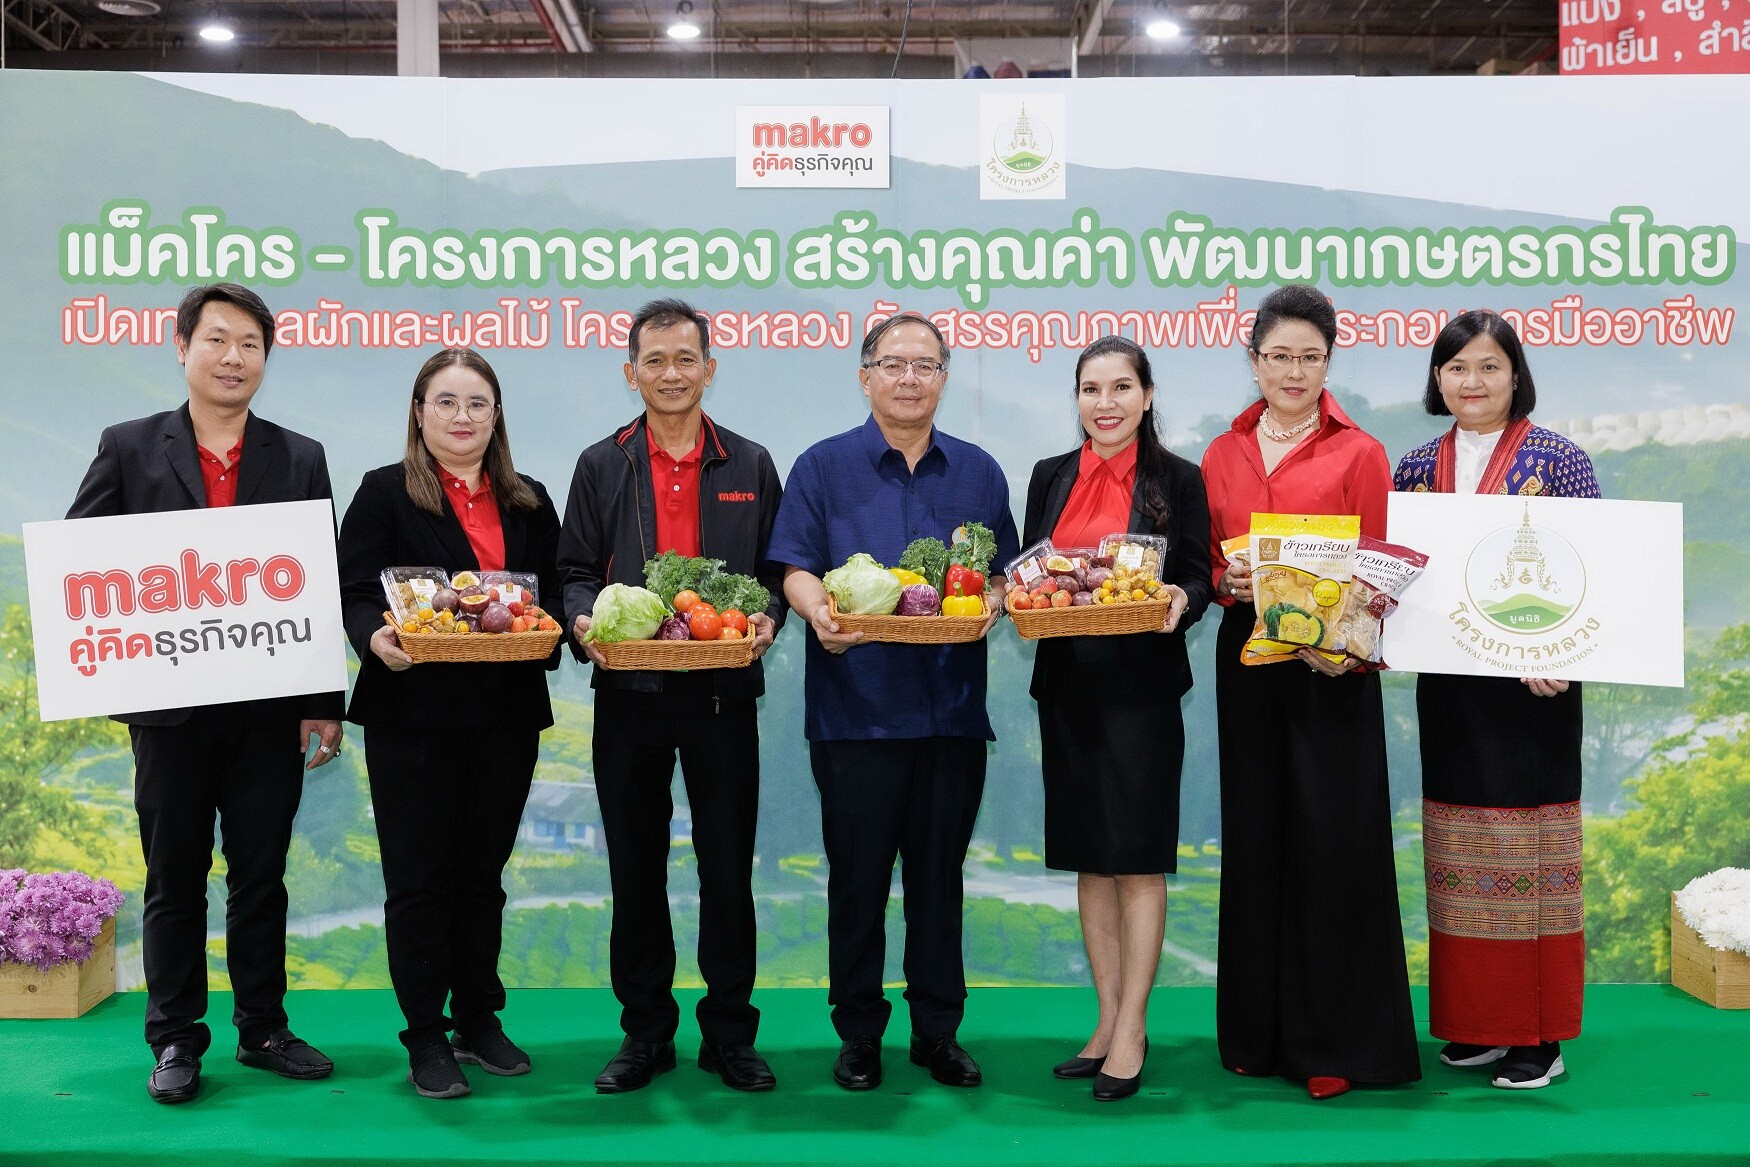 "แม็คโคร" จับมือโครงการหลวง ชูนโยบายเคียงข้างเกษตรกรไทย พัฒนาผลผลิตคุณภาพ ตอบโจทย์ผู้ประกอบการ ขยายตลาดผักผลไม้ ทุกสาขาทั่วประเทศ